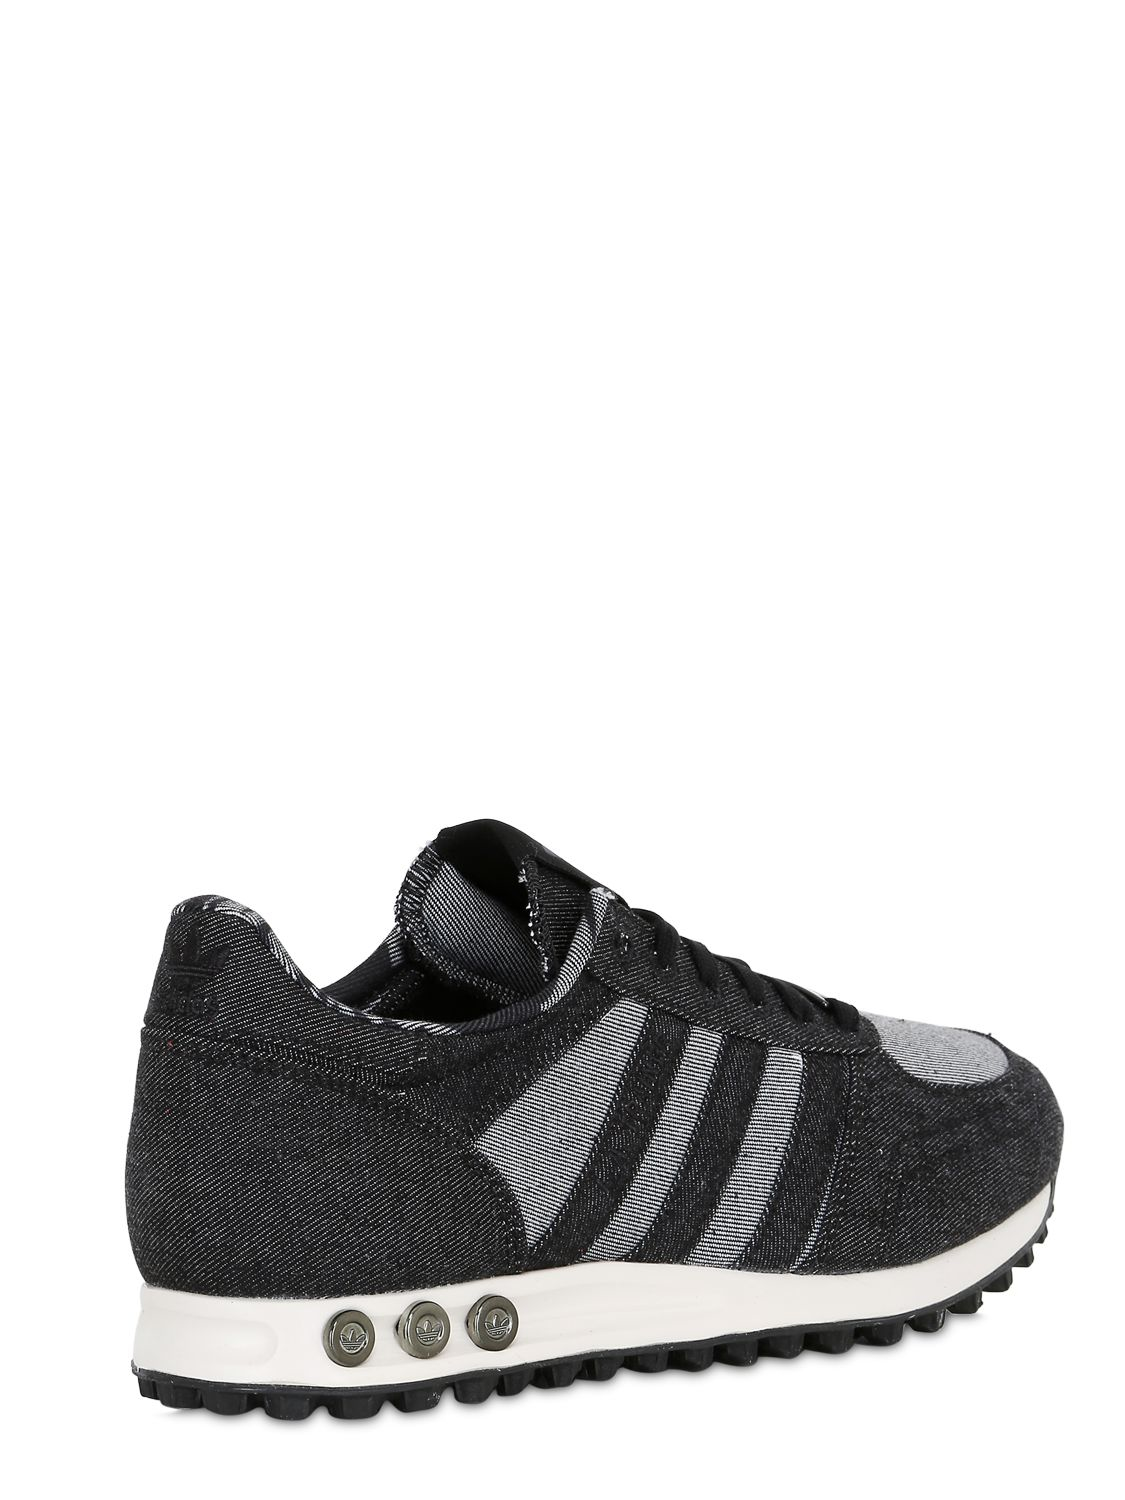 adidas Originals La Trainer Denim Sneakers in Anthracite (Gray) for Men -  Lyst